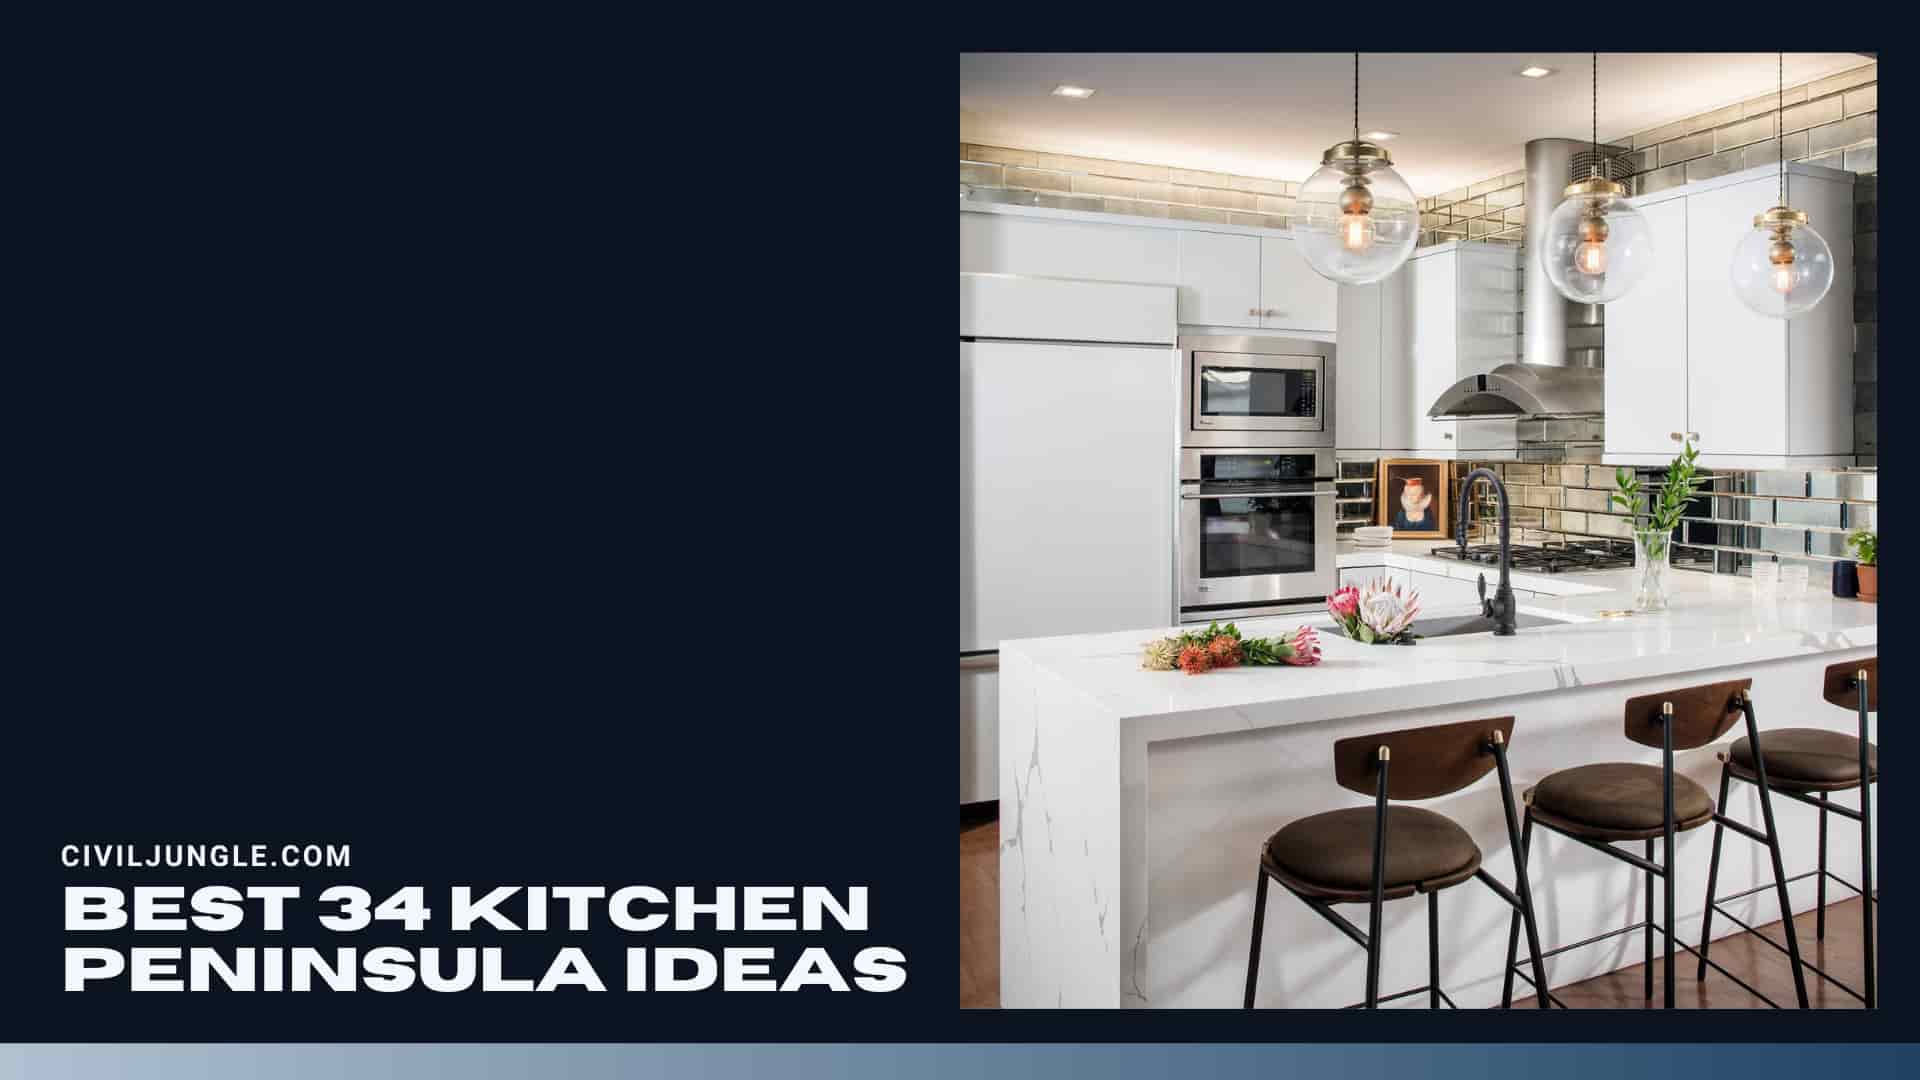 Best 34 Kitchen Peninsula Ideas